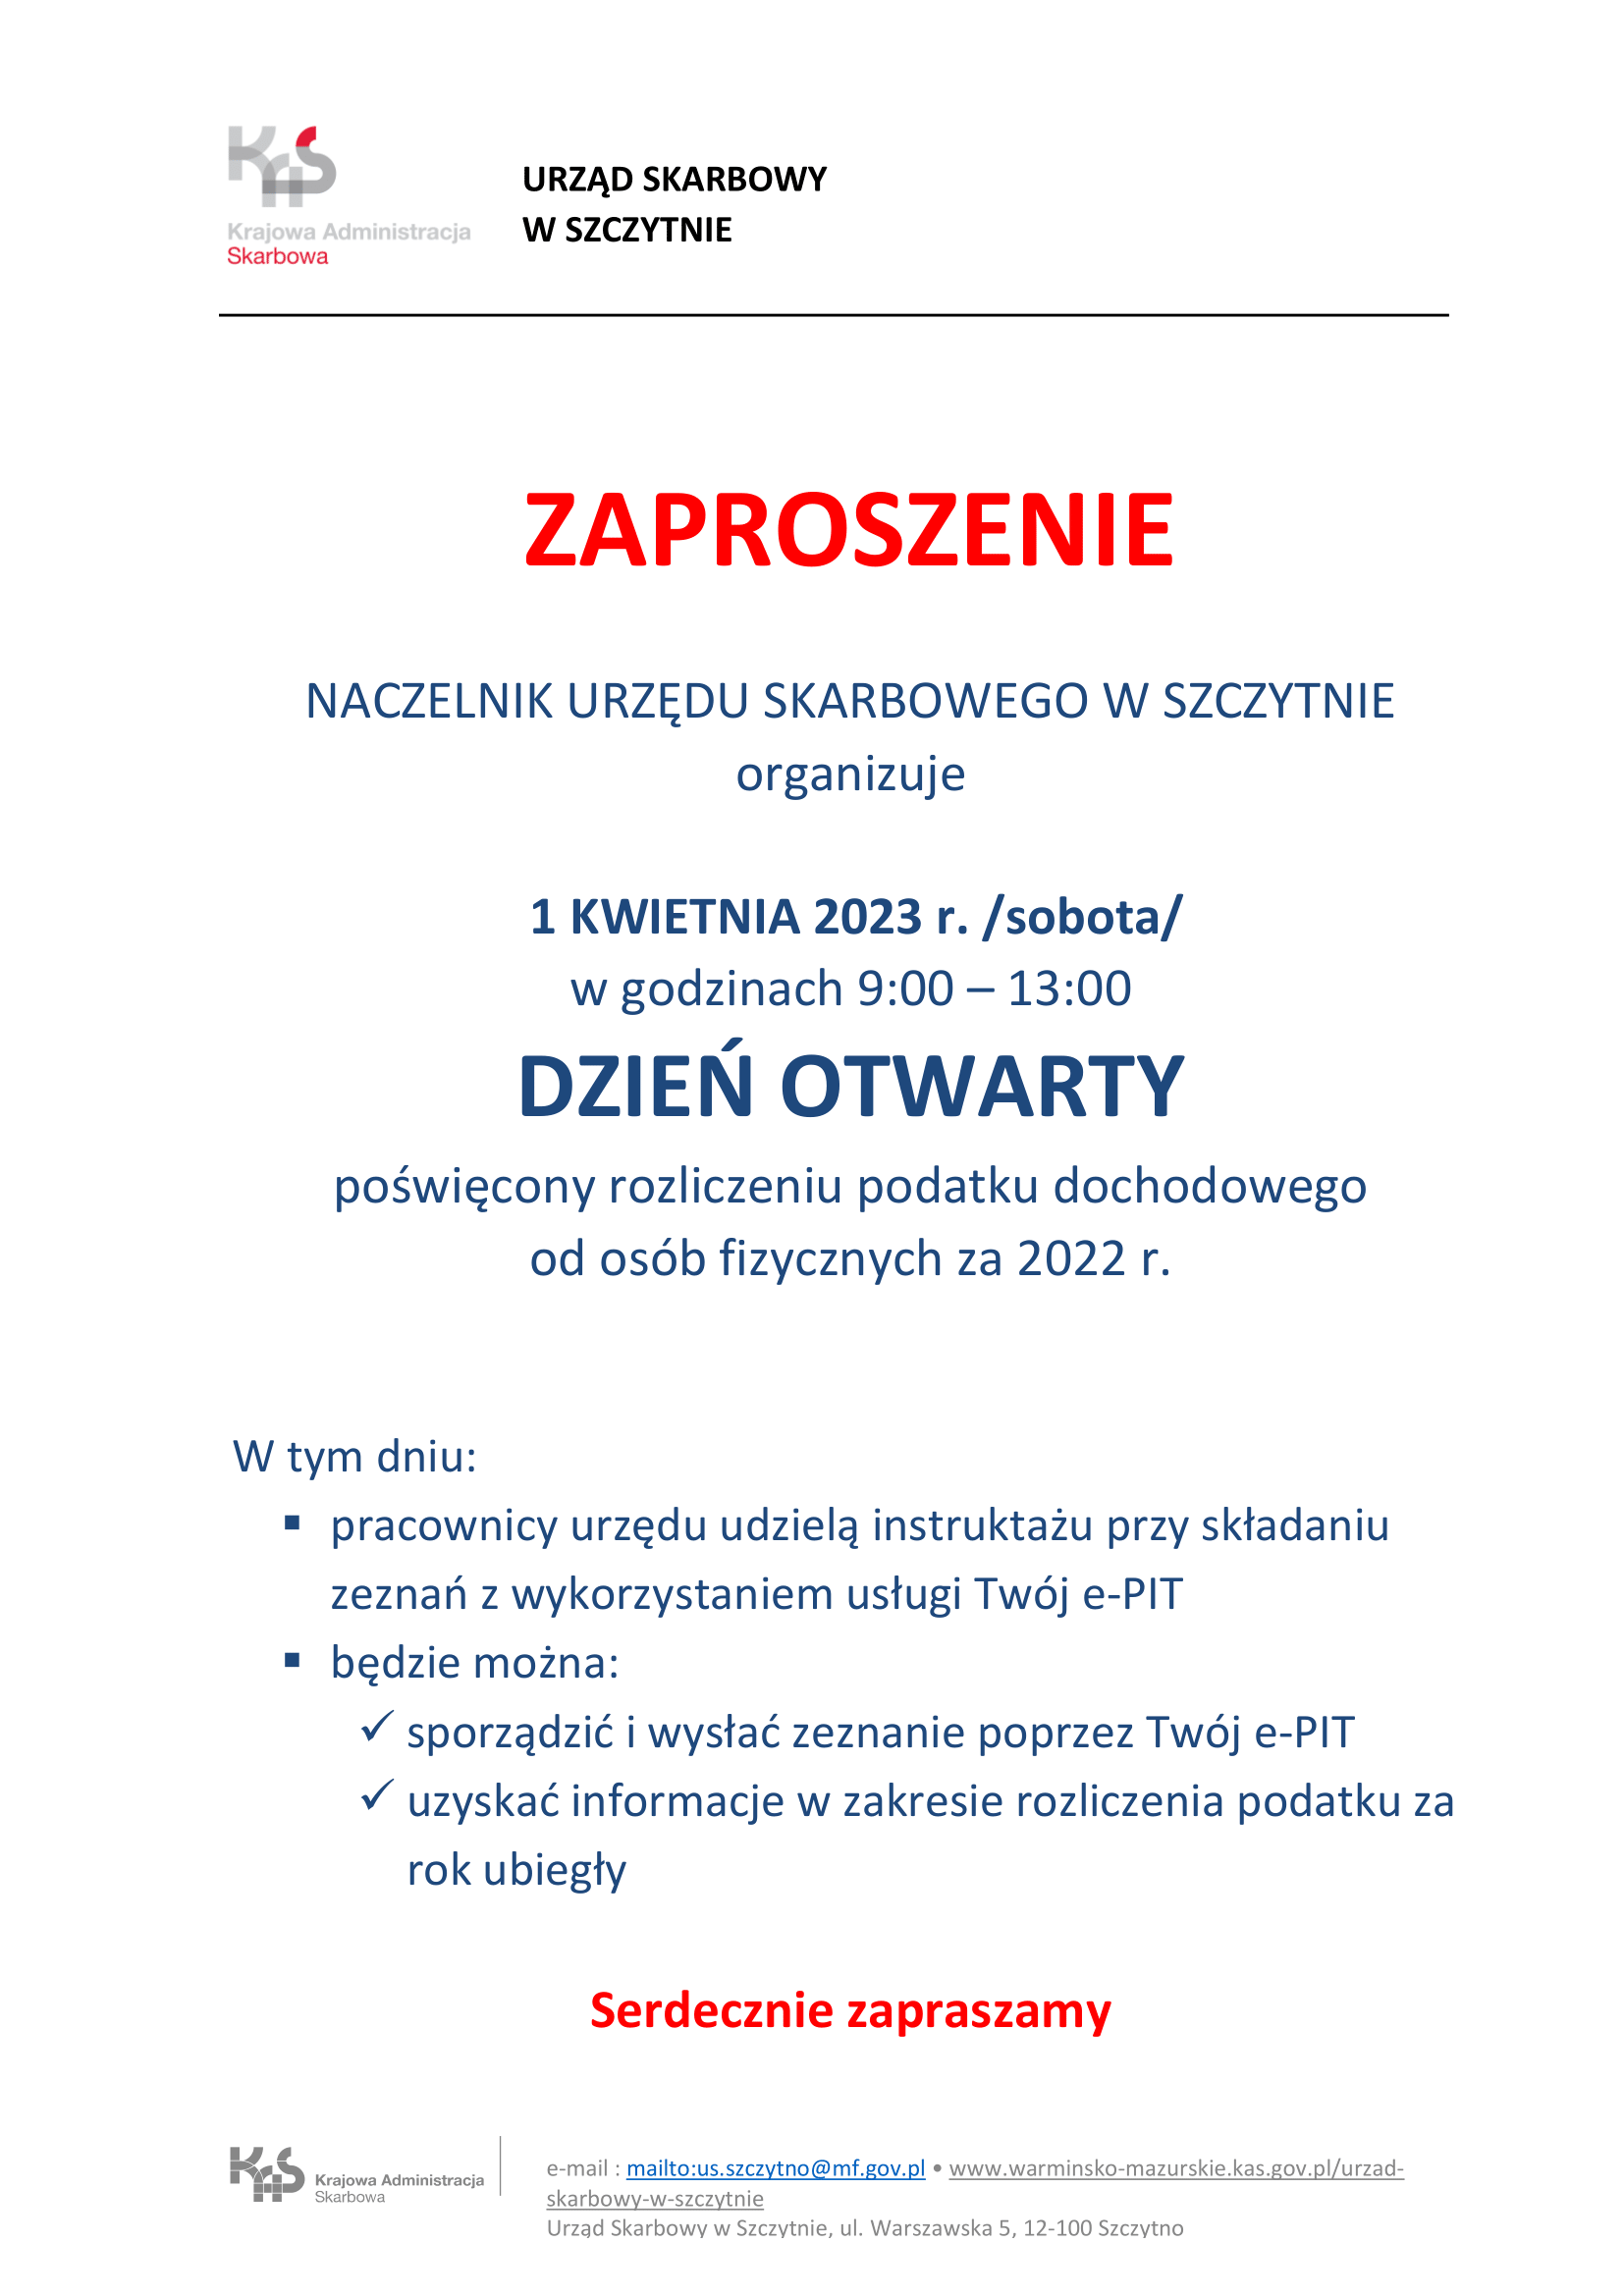 https://m.powiatszczycienski.pl/2023/03/orig/zaproszenie-dzien-otwarty-1-04-2023-1-60737.png